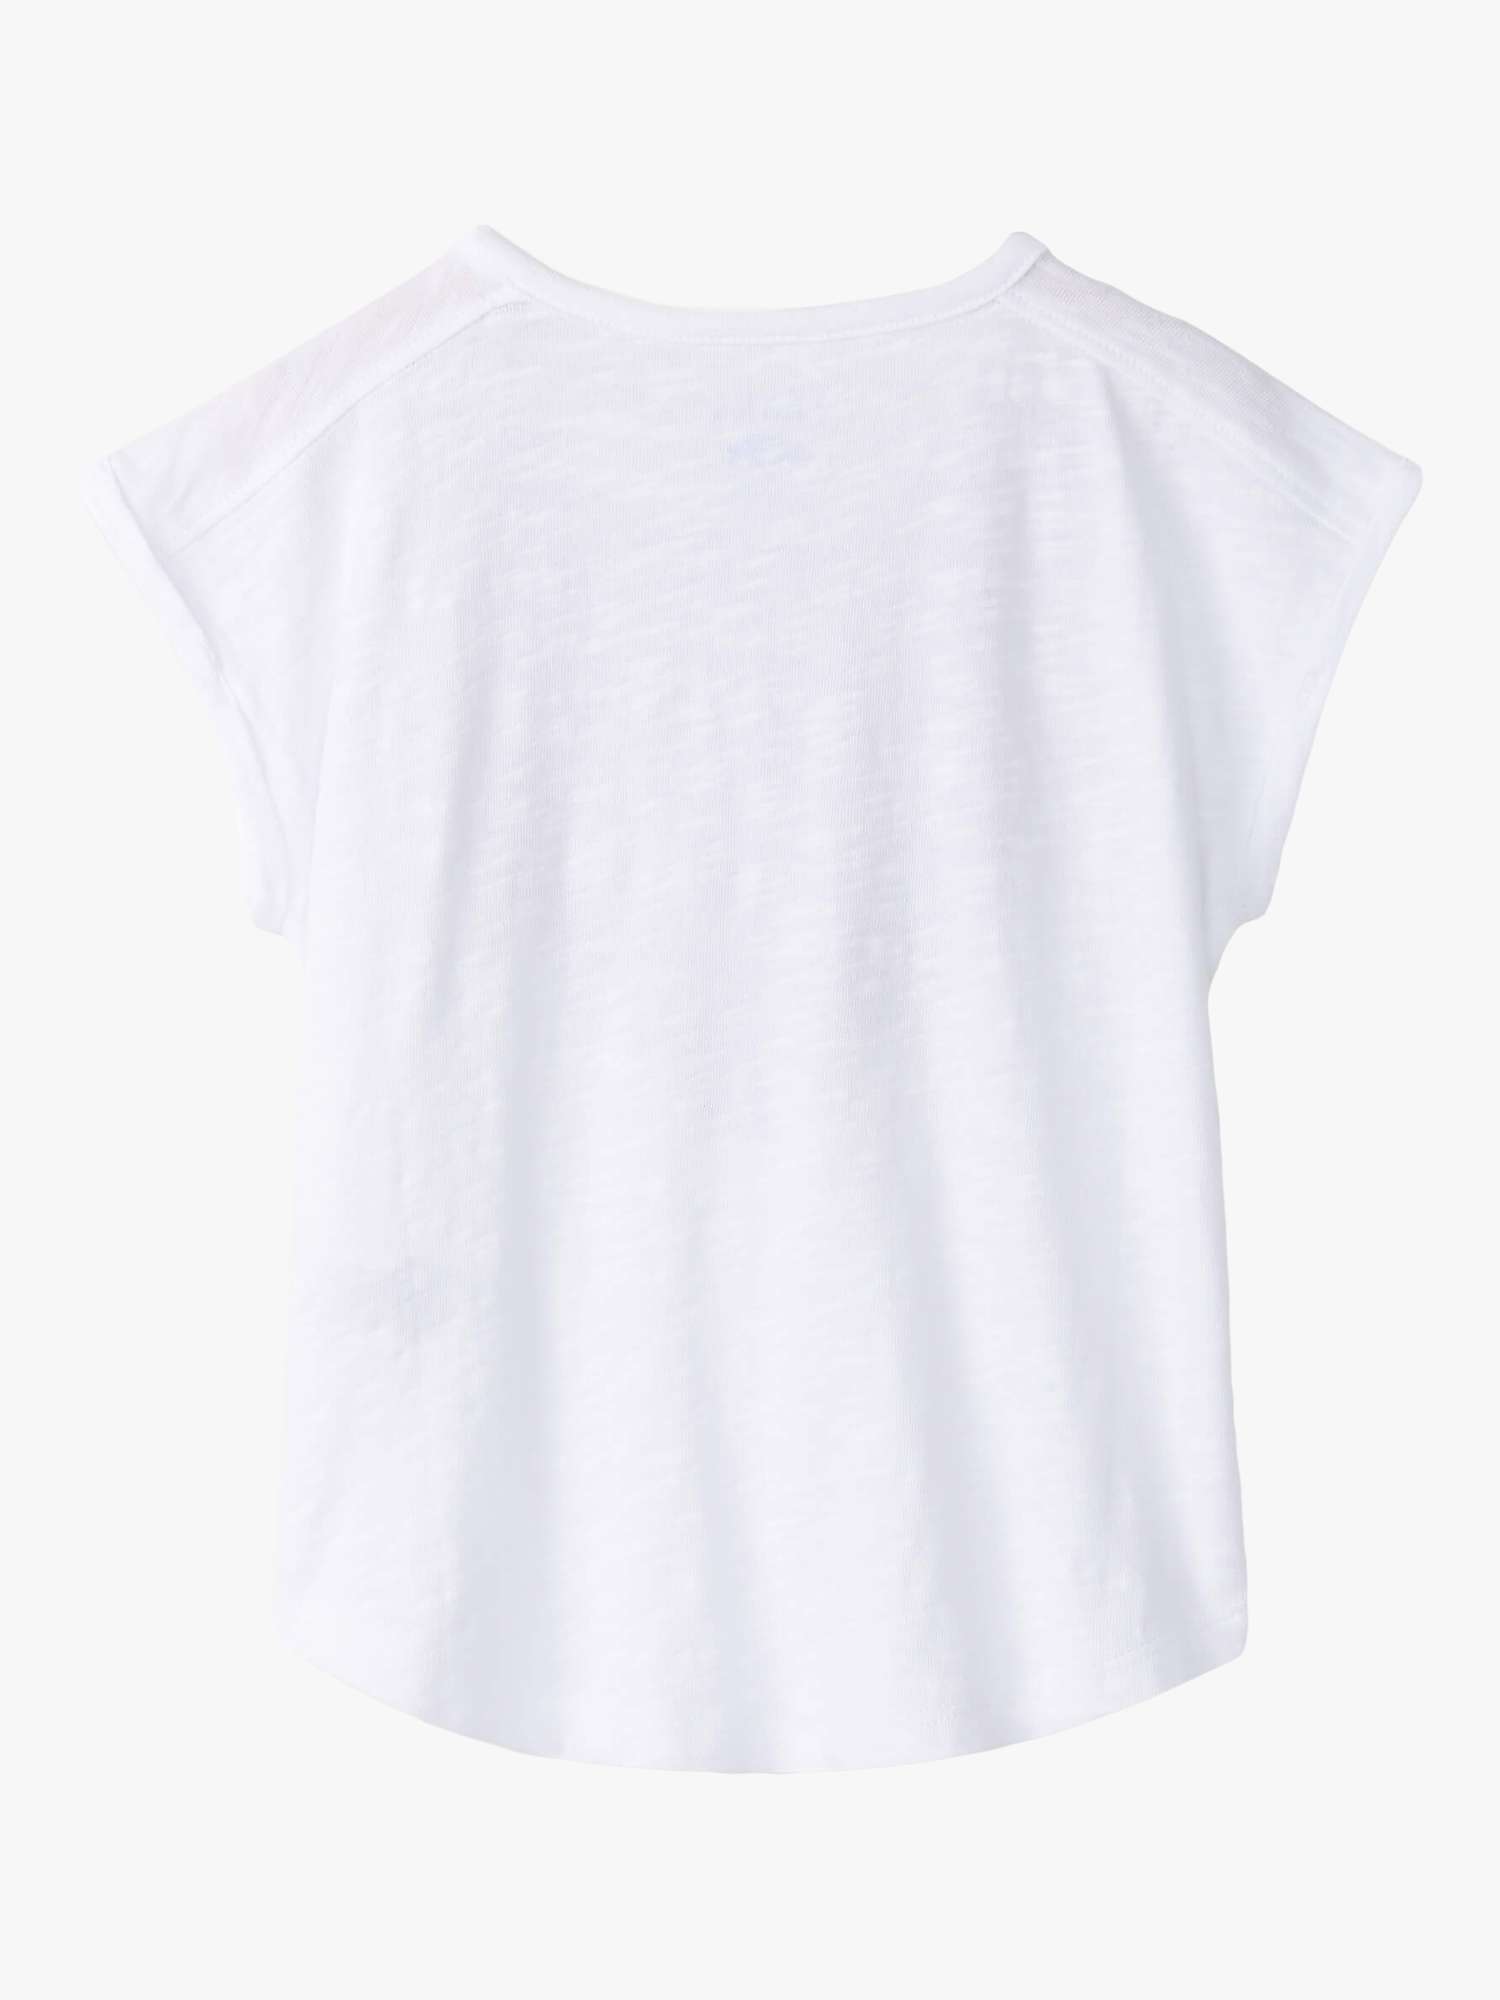 Buy Hatley Kids' Boho Relaxed Tassel T-Shirt, White/Multi Online at johnlewis.com